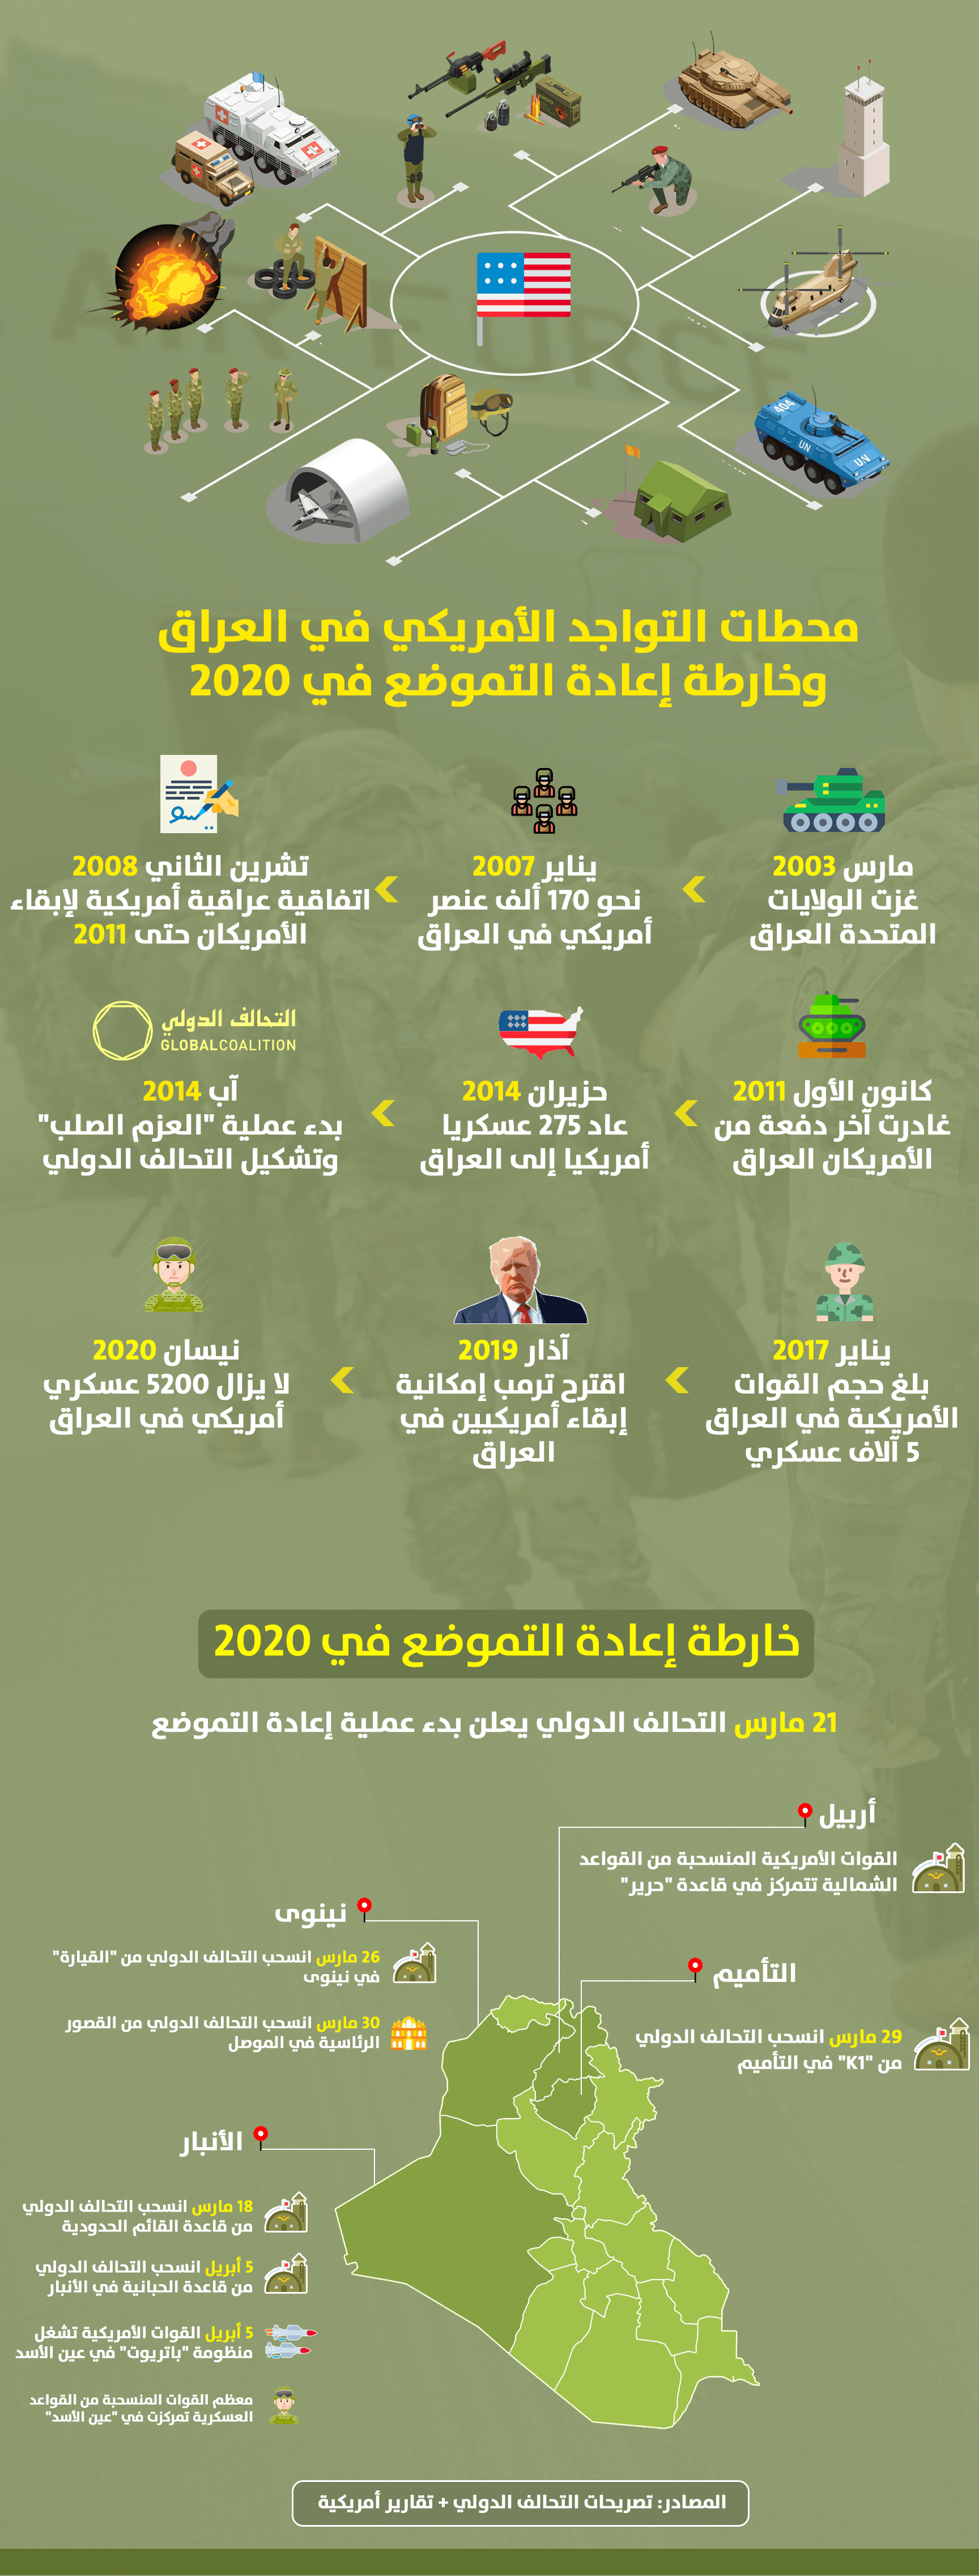 محطات التواجد الأمريكي في العراق وخارطة إعادة التموضع في 2020/انفوجرافيك 1700x4500